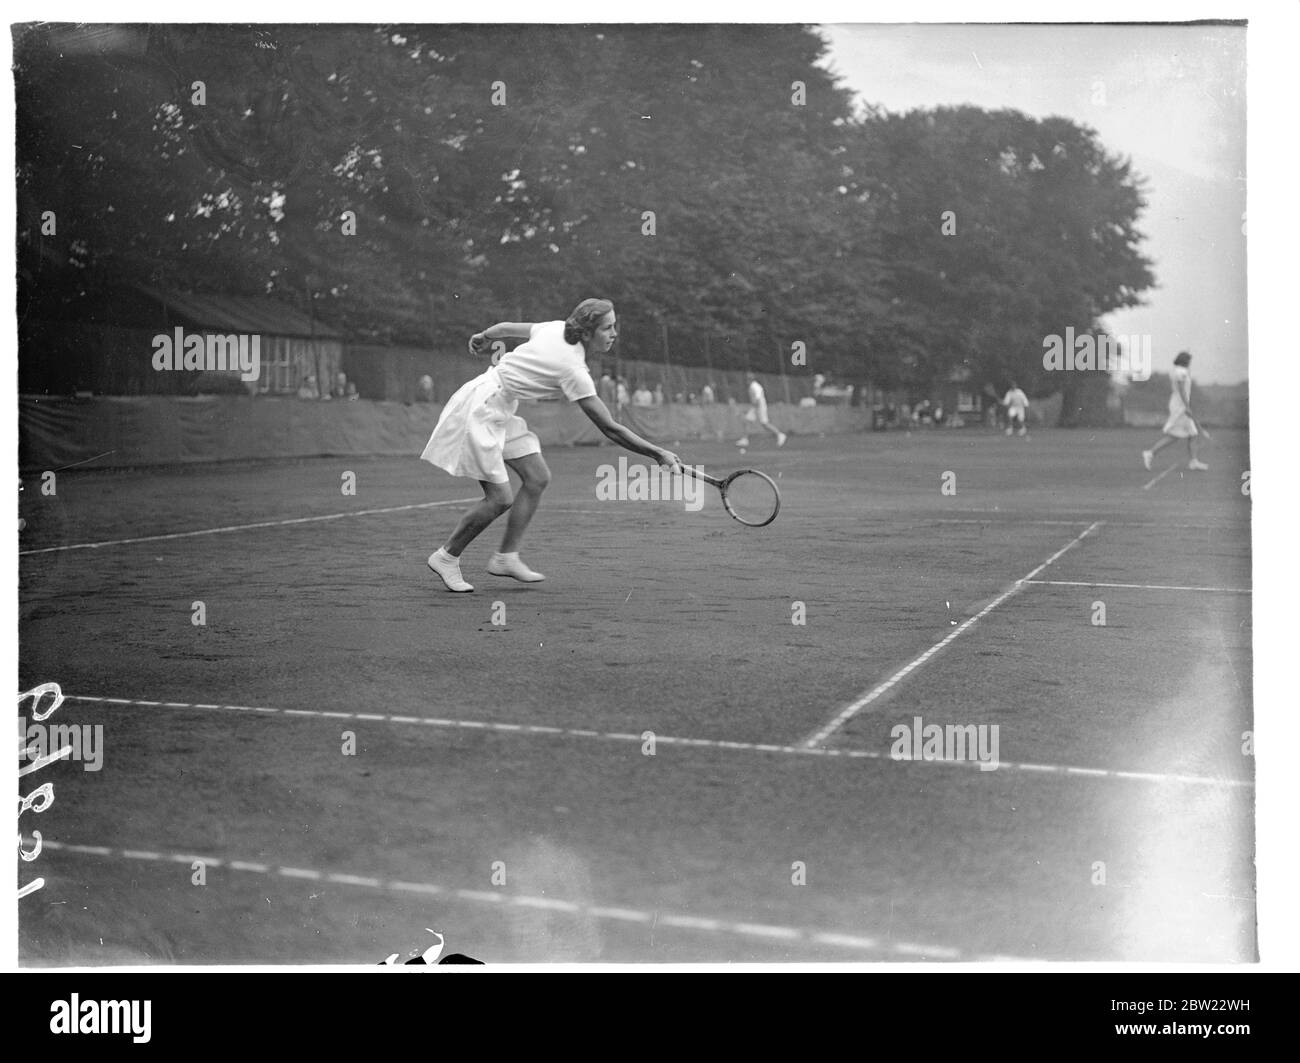 Les Championnats juniors de tennis du Middlesex ont été inaugurés au Herga Club, Harrow, Londres. Miss Zinovieff en jeu. 30 août 1937 Banque D'Images